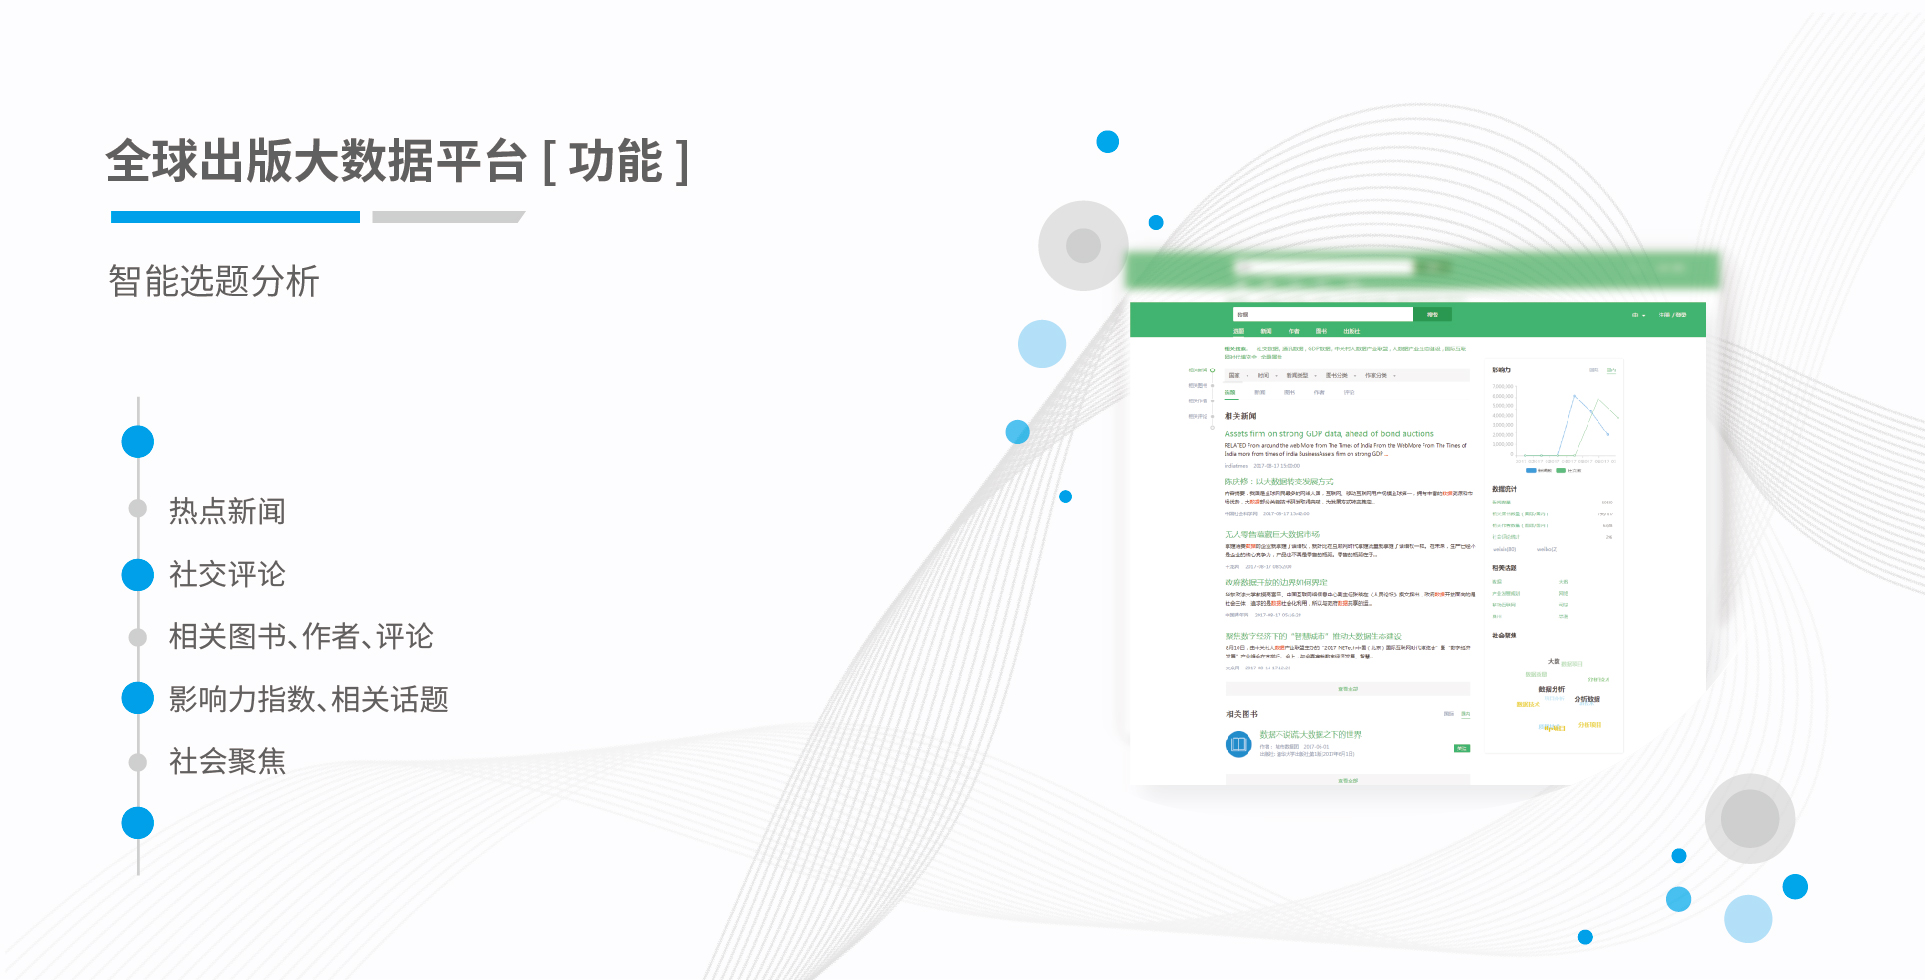 全球出版大数据 2017.V1.0 中文(1)_画板 5.jpg